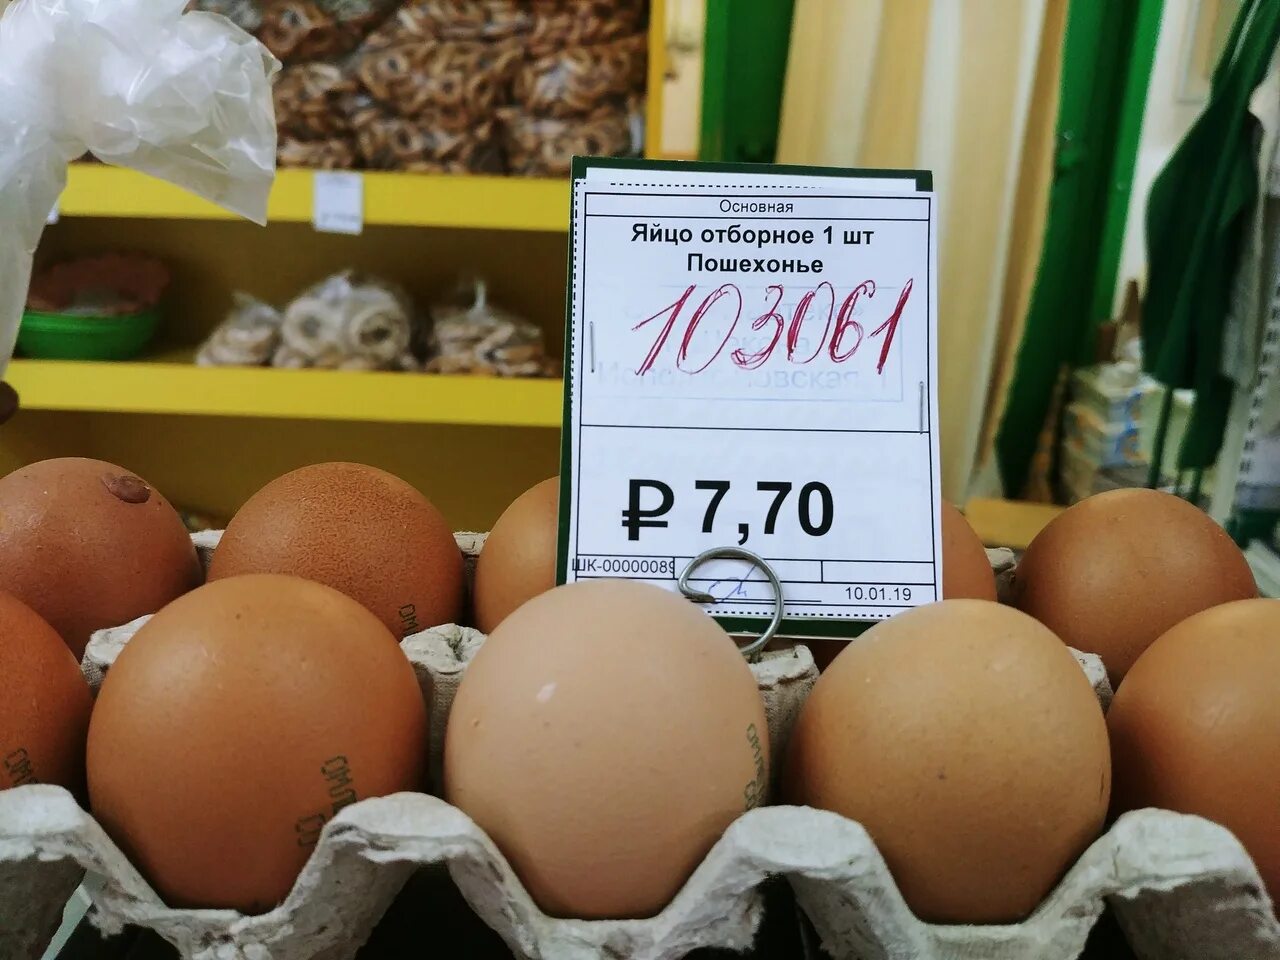 Цены на яйца. Ассортимент яиц. Яйца в магазине. Яйца на прилавке магазина. Яички в магазине.